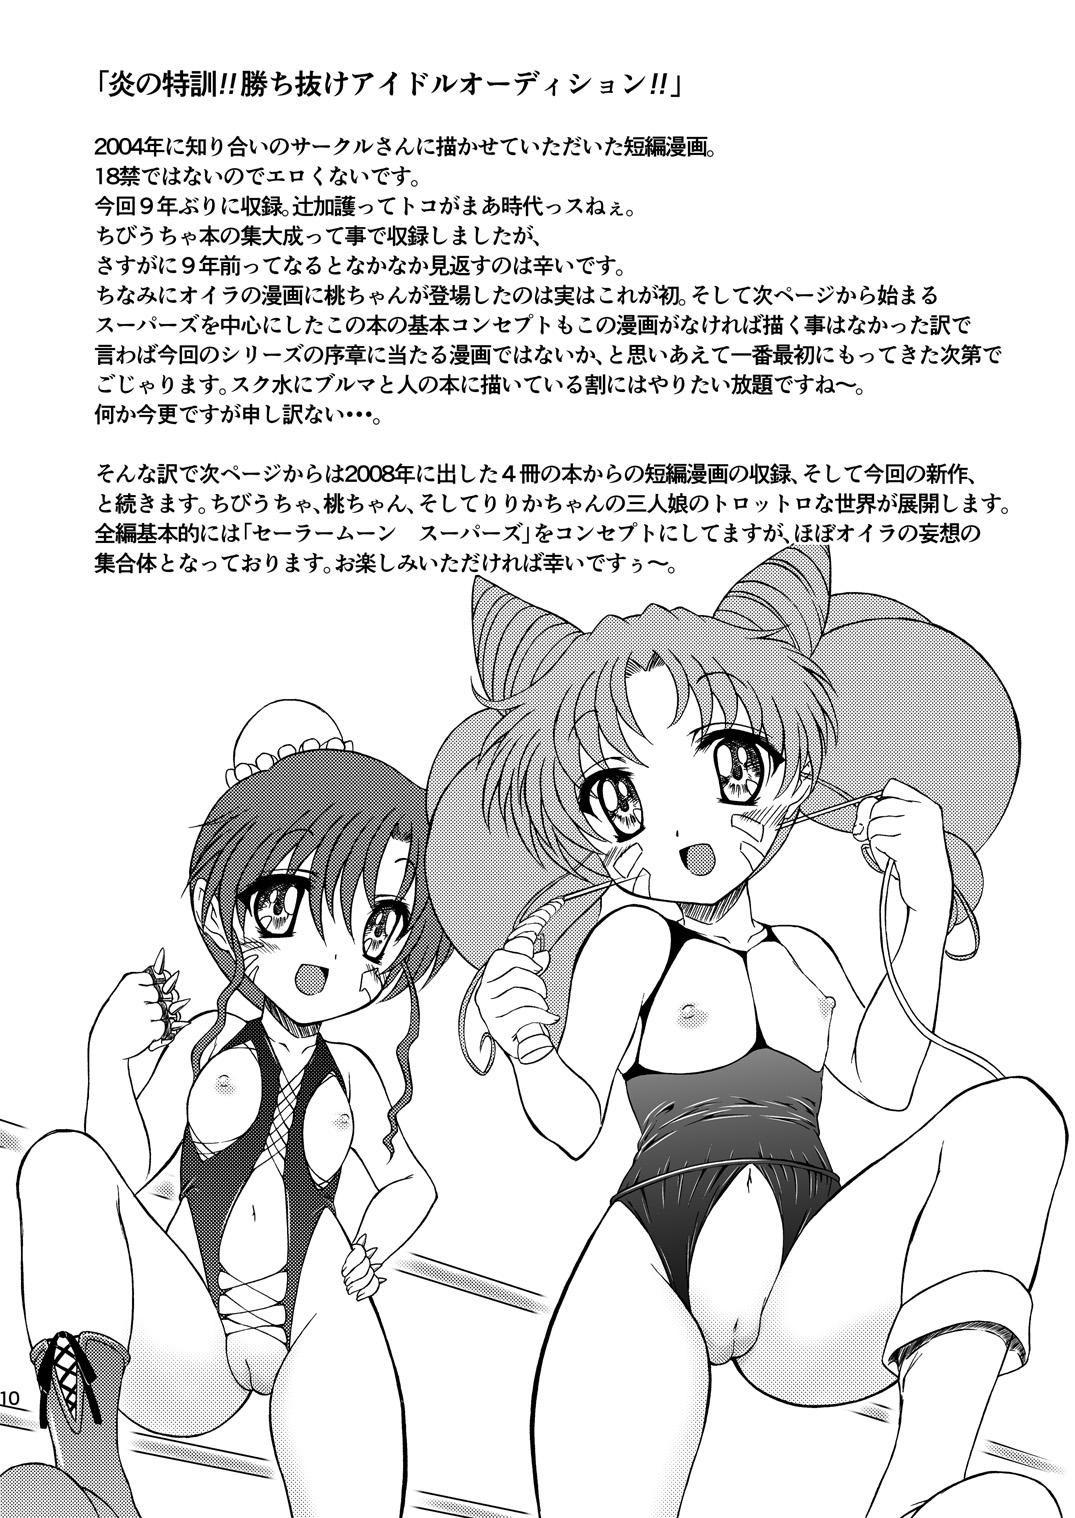 Foot Worship PINK SUGAR 20th Anniversary Special - Sailor moon | bishoujo senshi sailor moon Gay Military - Page 10